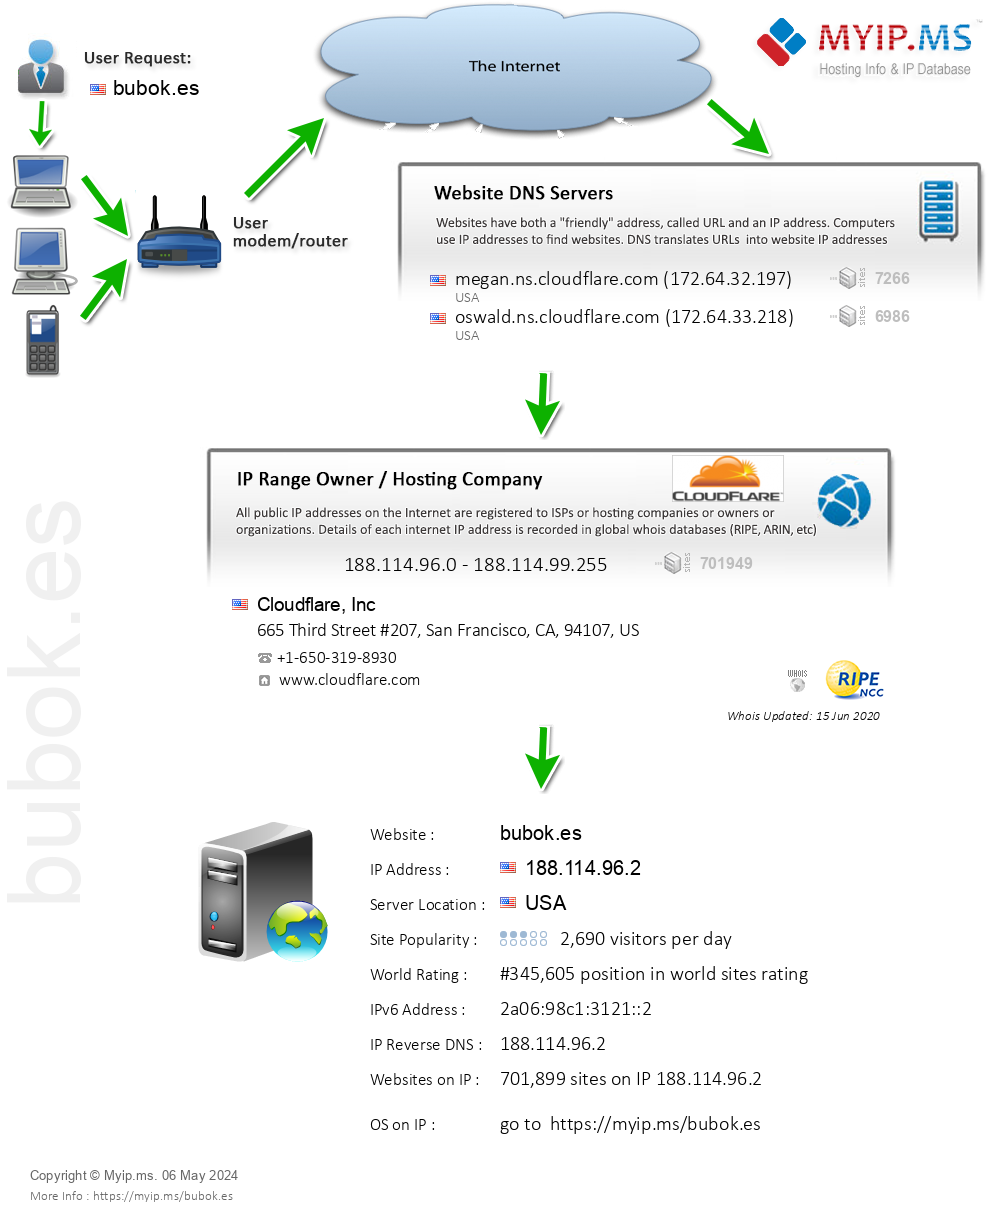 Bubok.es - Website Hosting Visual IP Diagram